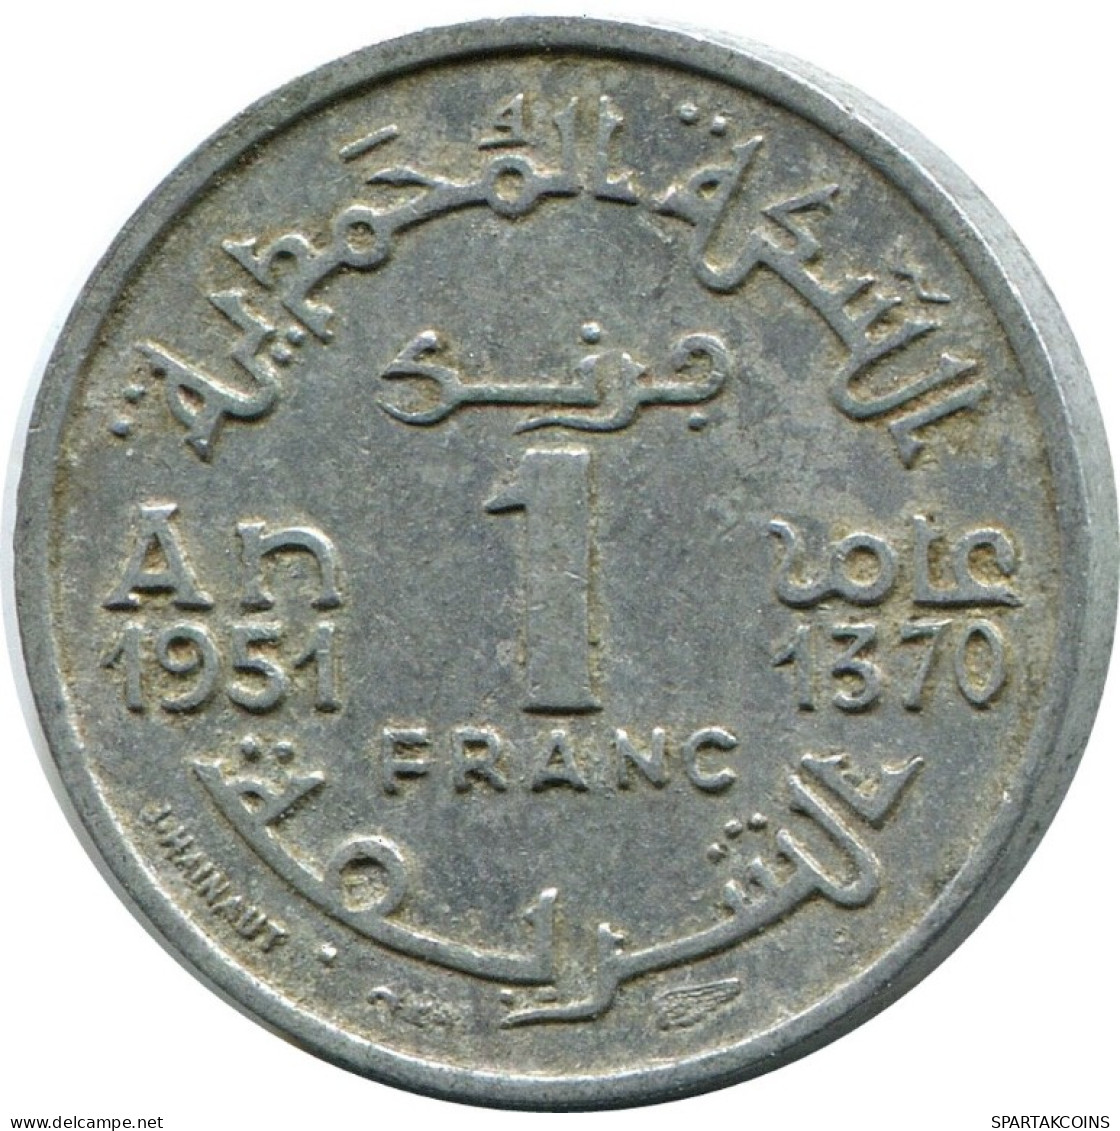 1 FRANC 1951 MARRUECOS MOROCCO Islámico Moneda #AH697.3.E.A - Maroc